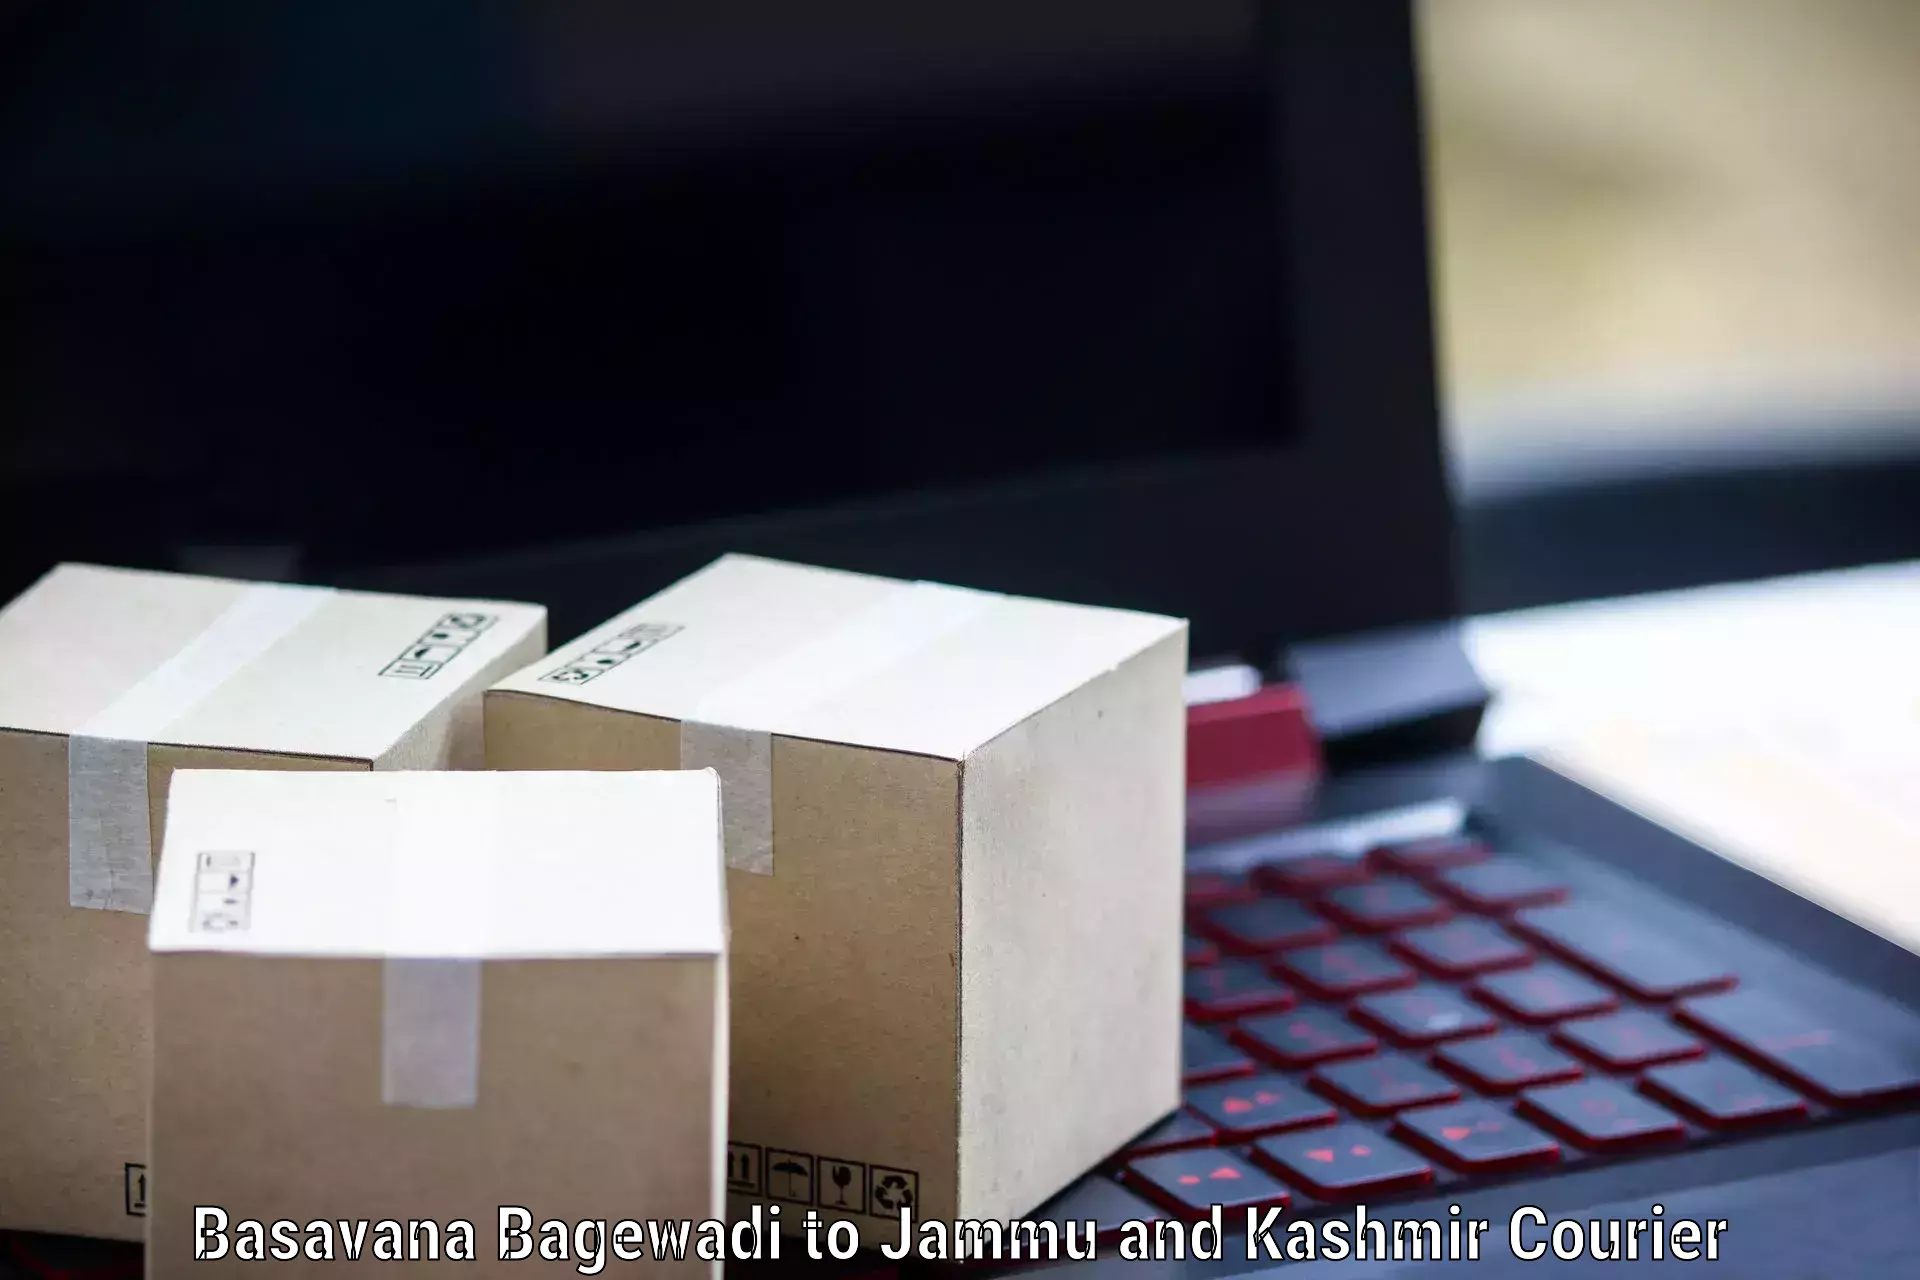 Comprehensive parcel tracking Basavana Bagewadi to Katra